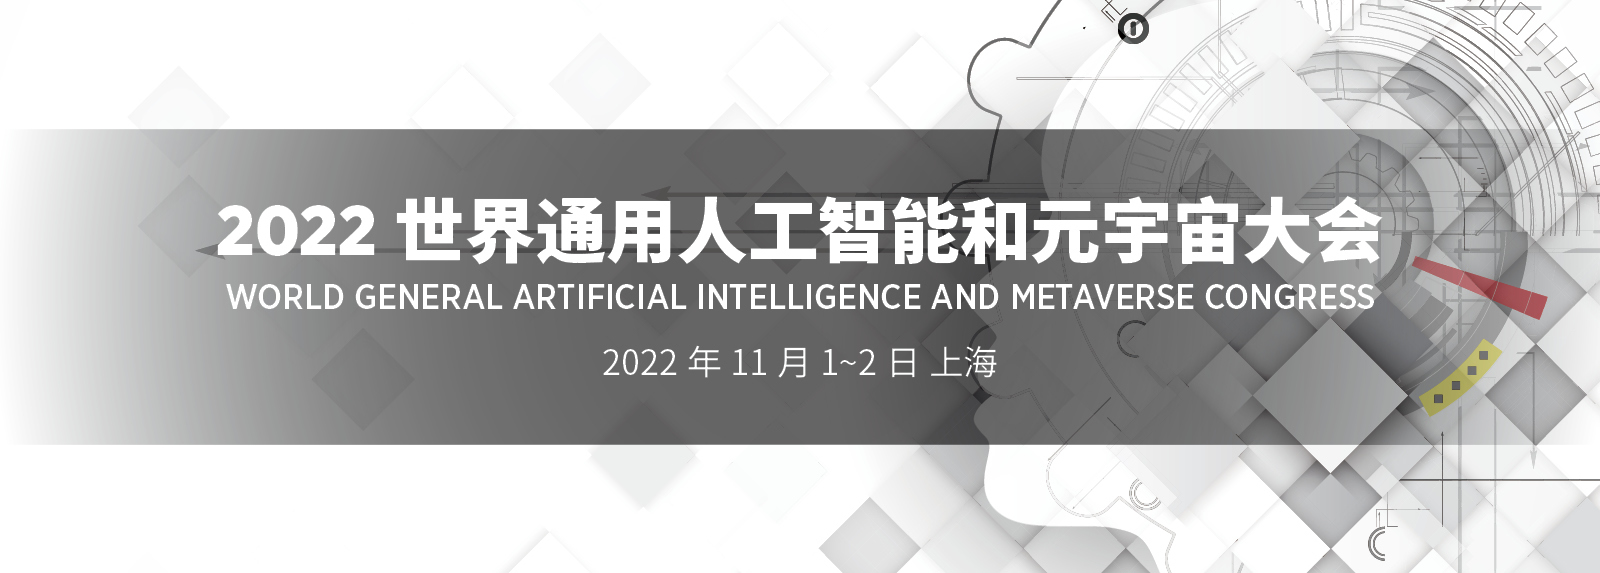 2022 世界通用人工智能大会